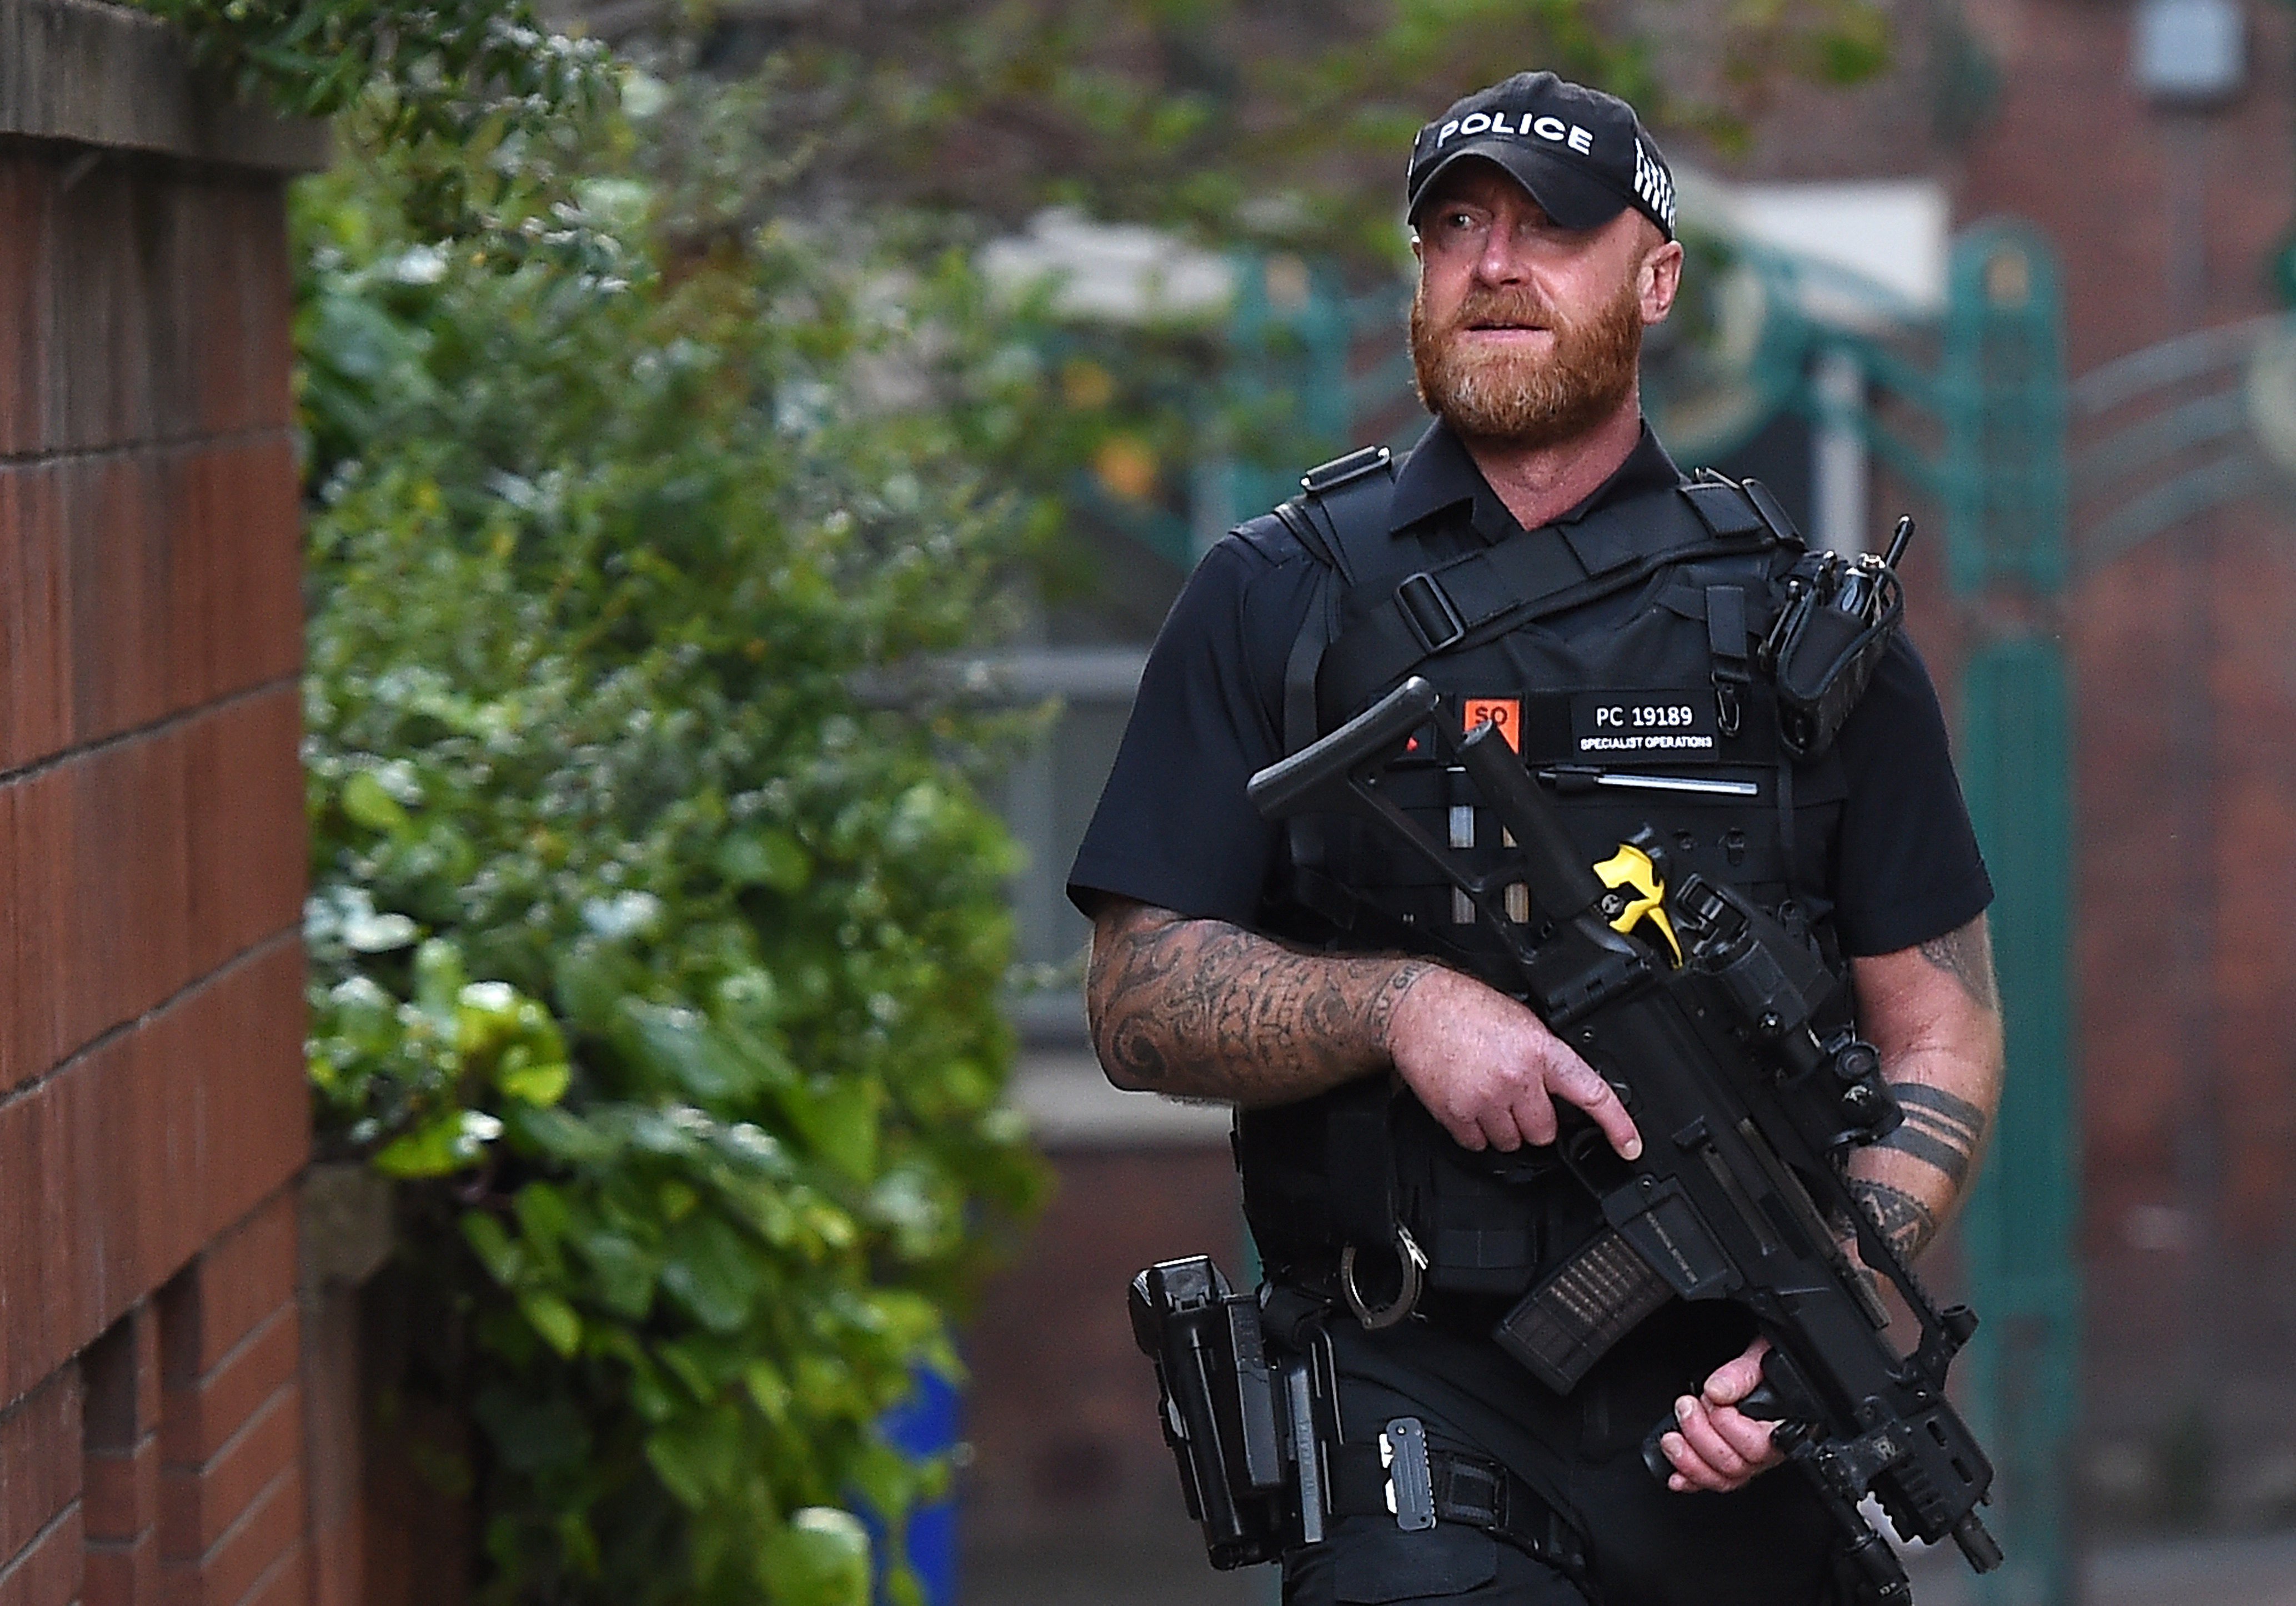 El Regne Unit eleva al màxim el nivell d'alerta antiterrorista